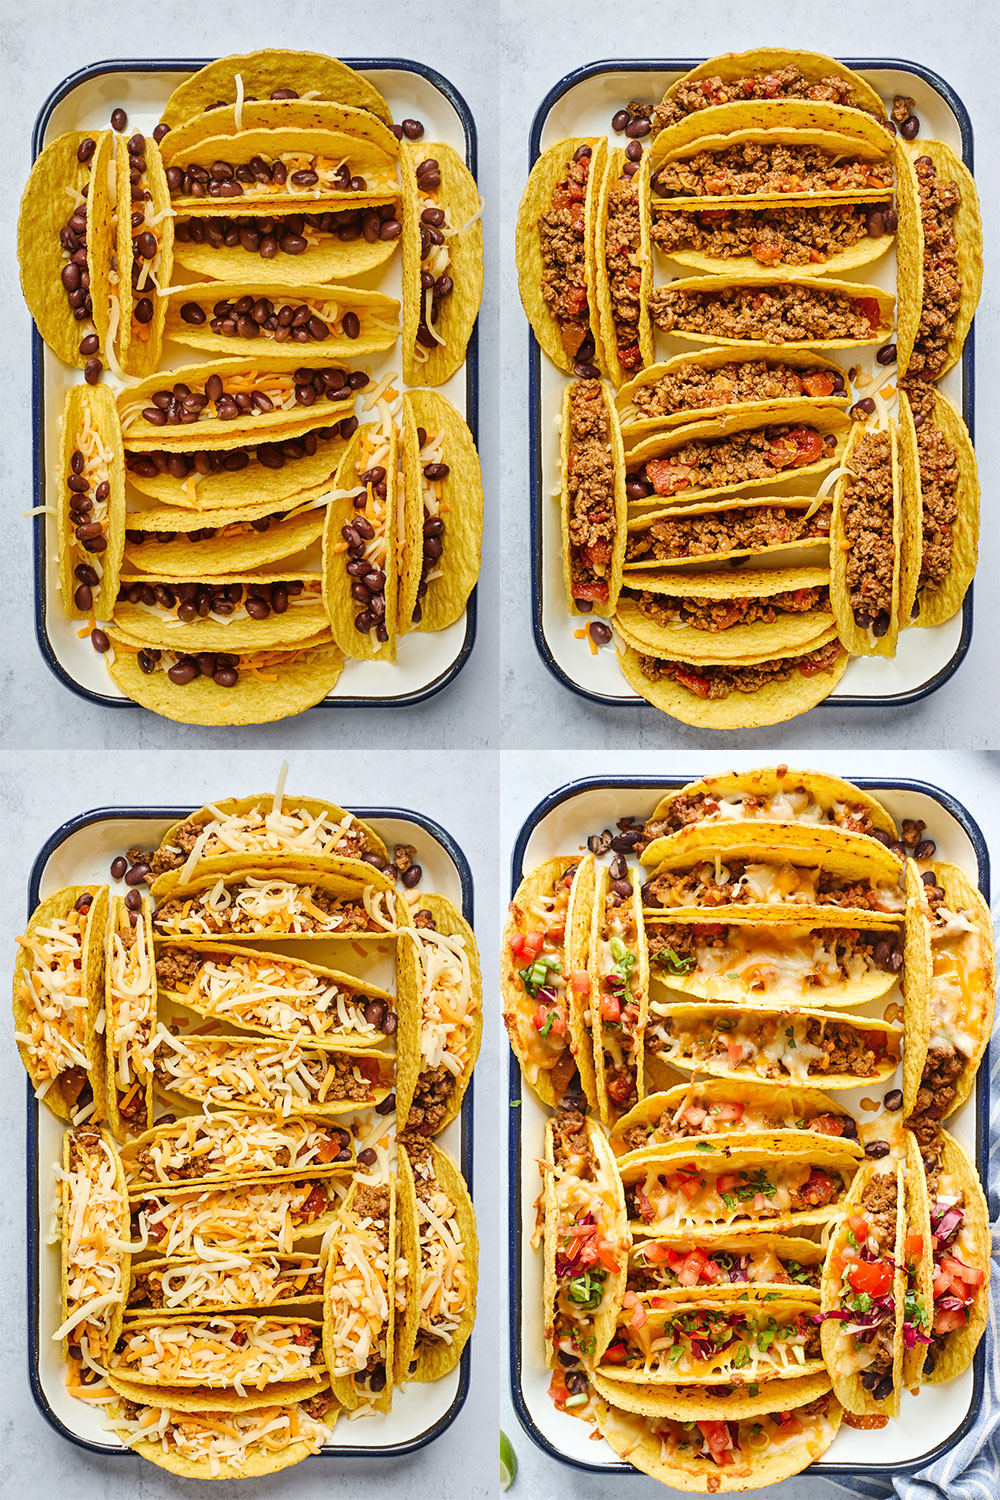 Cheesy Baked Tacos